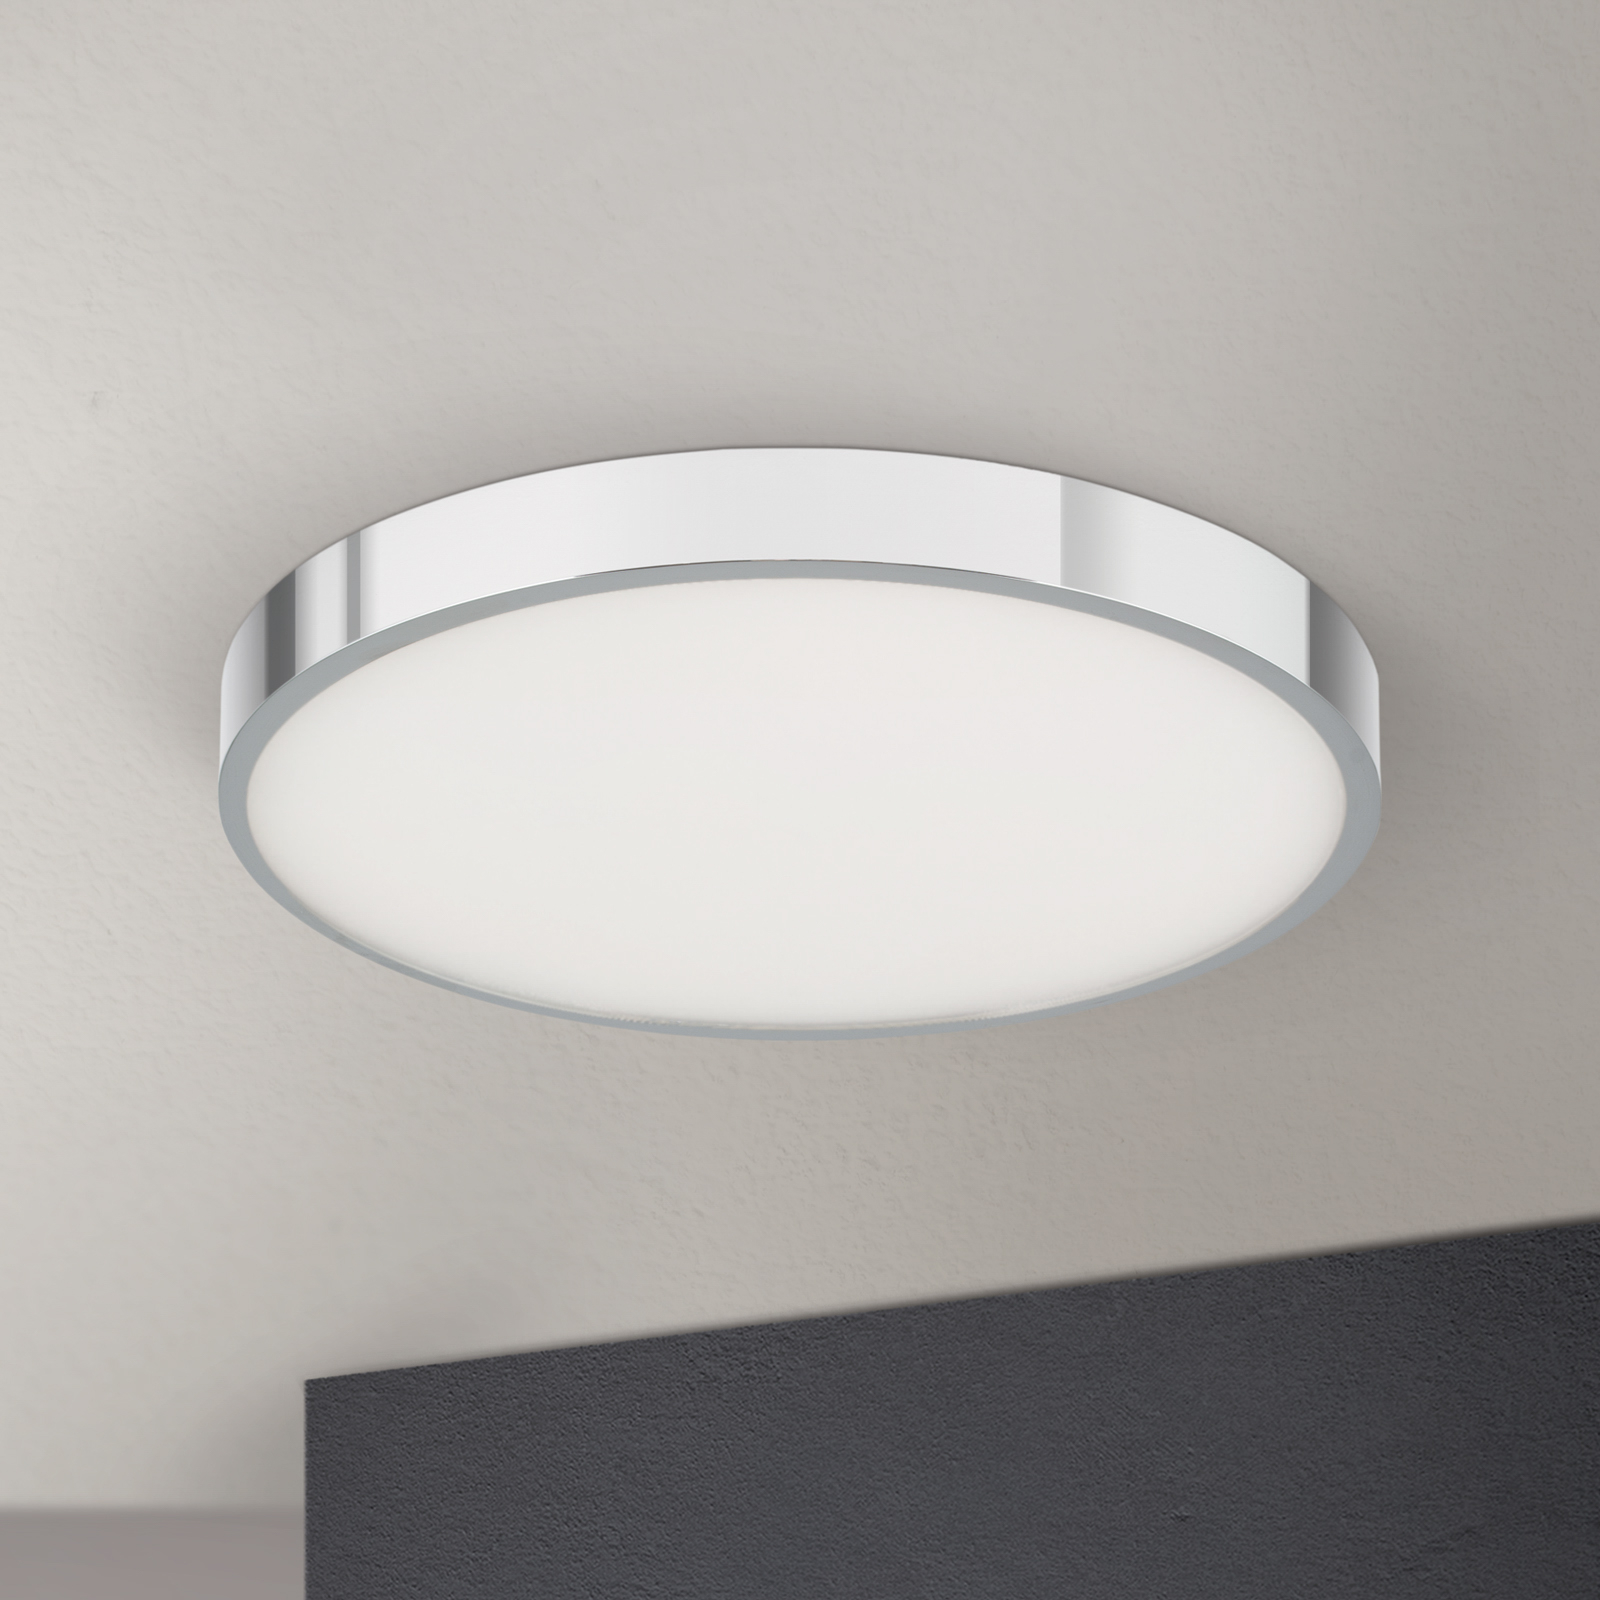 LED ceiling light Bully, chrome, Ø 28 cm